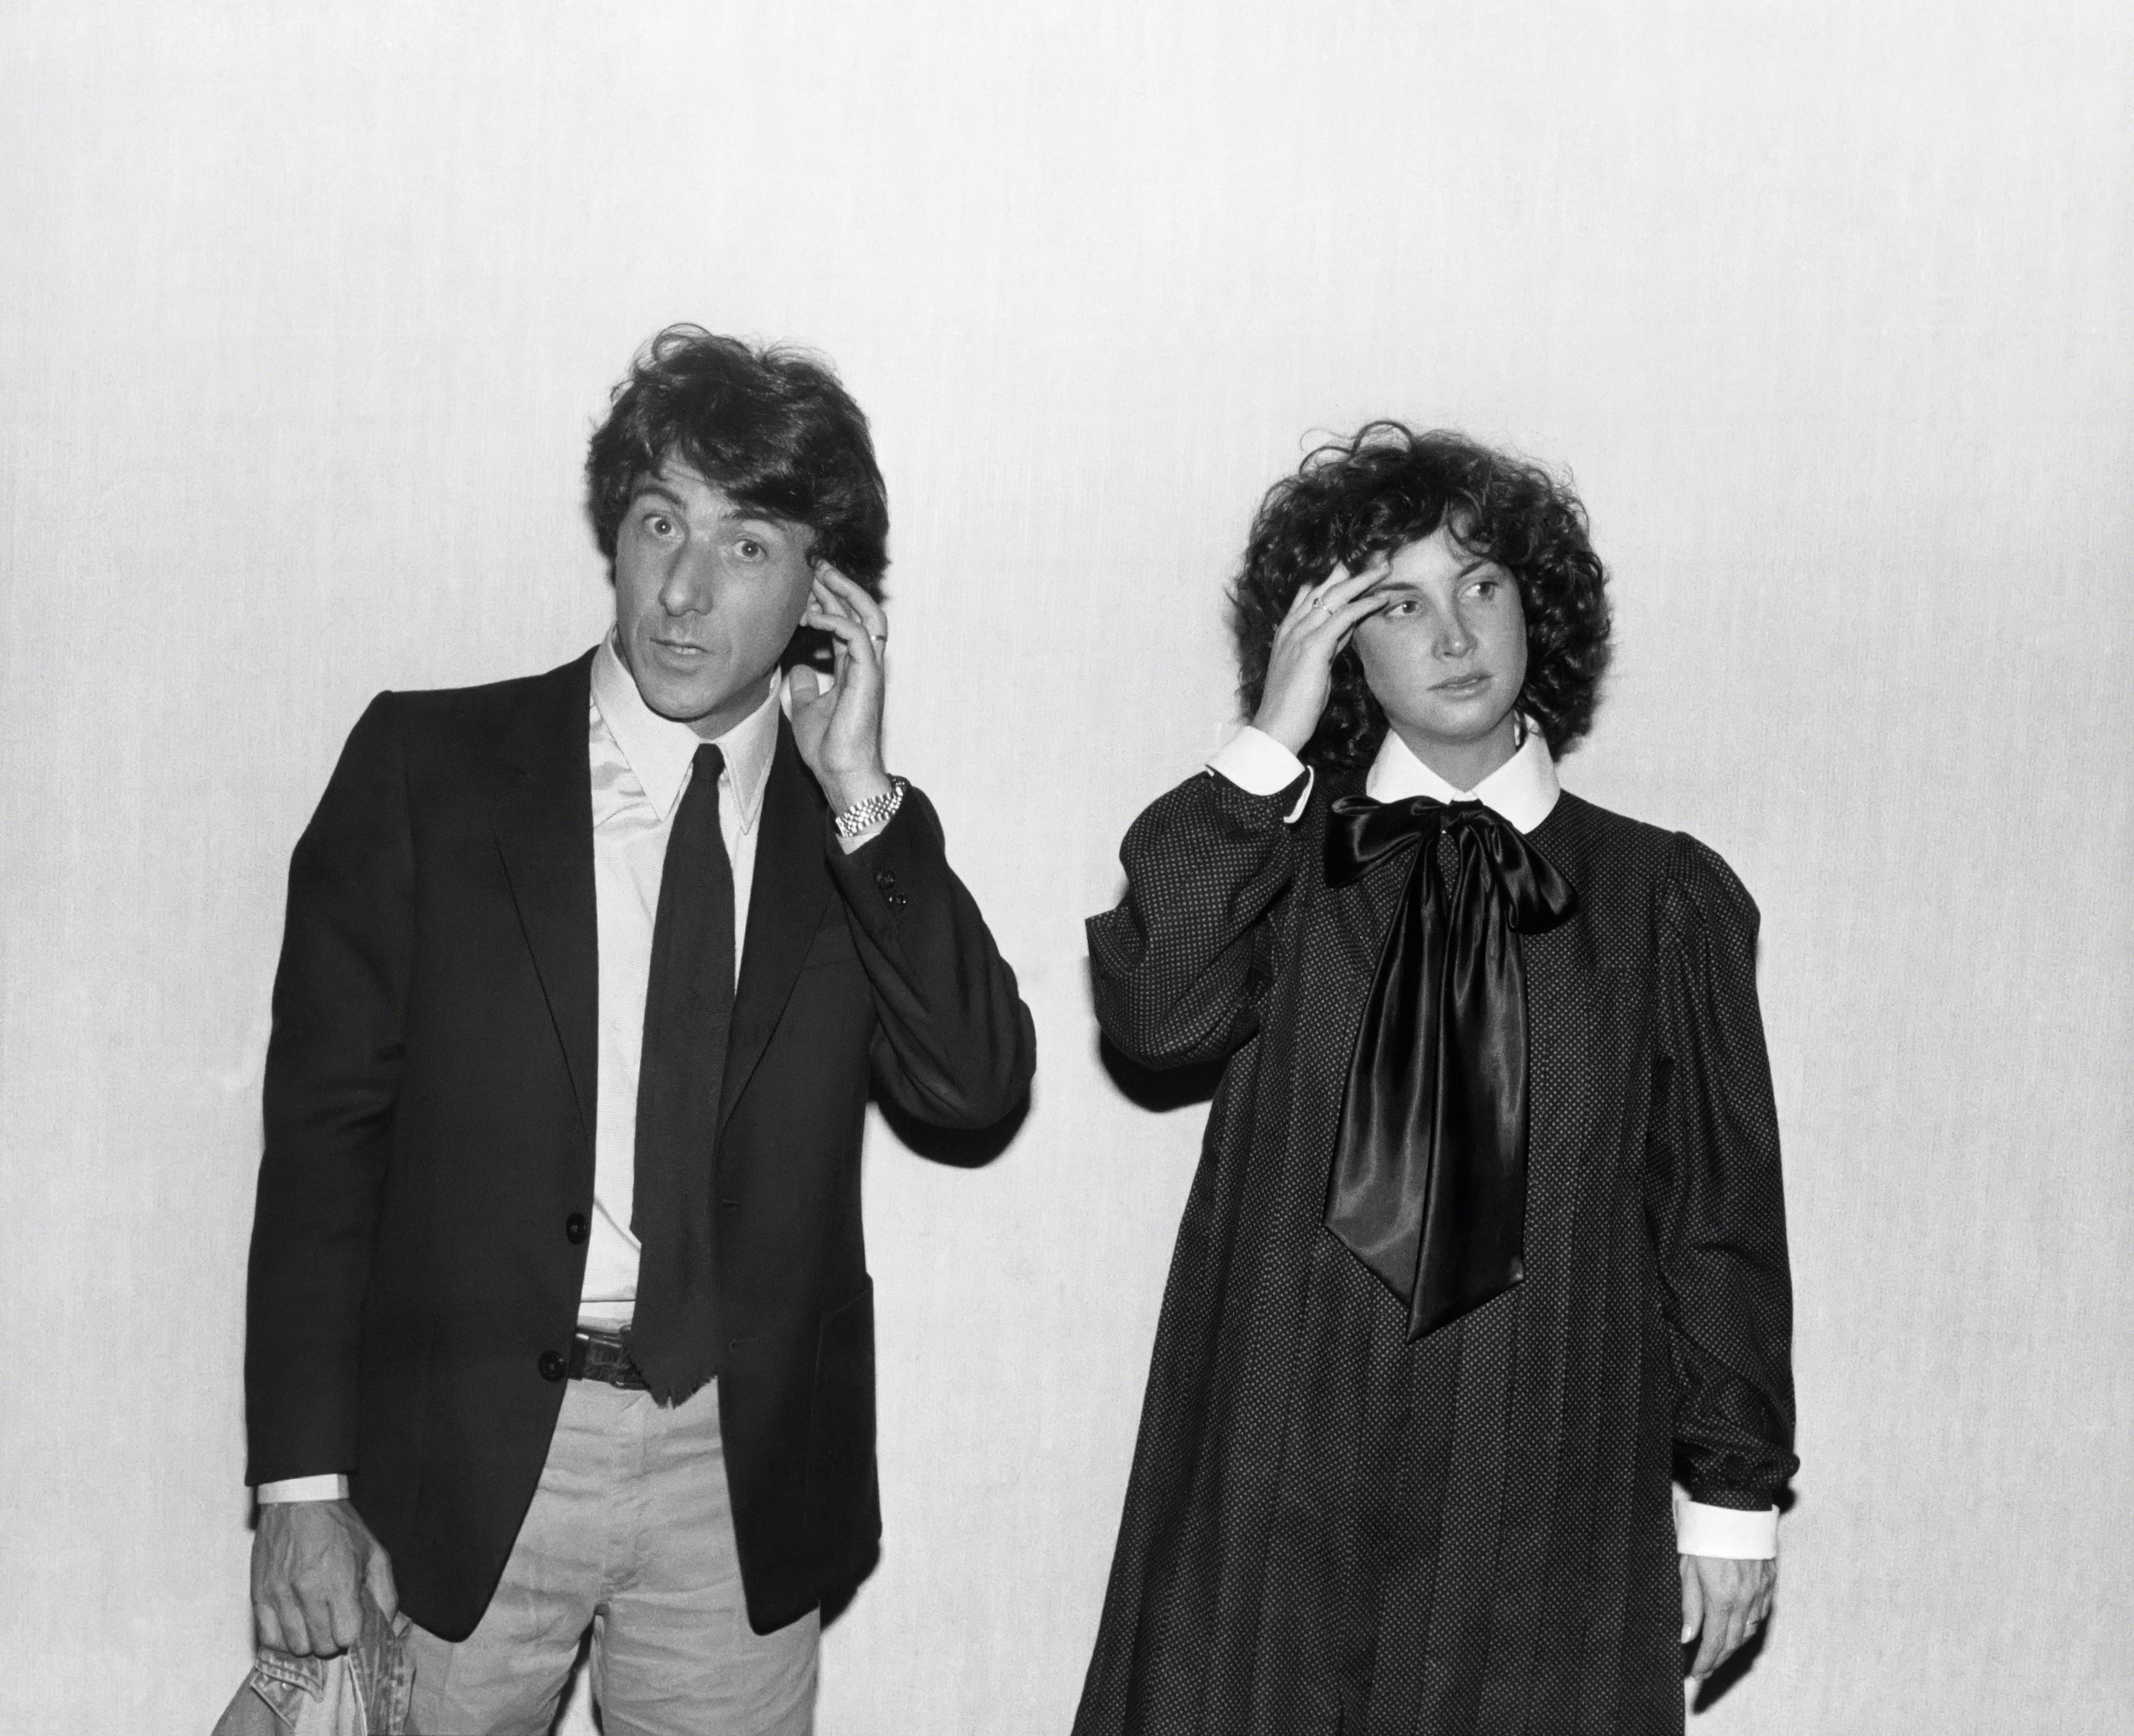 Der Schauspieler und die Frau bei der Premiere von "Tootsie" in New York City im Jahr 1982. | Quelle: Getty Images